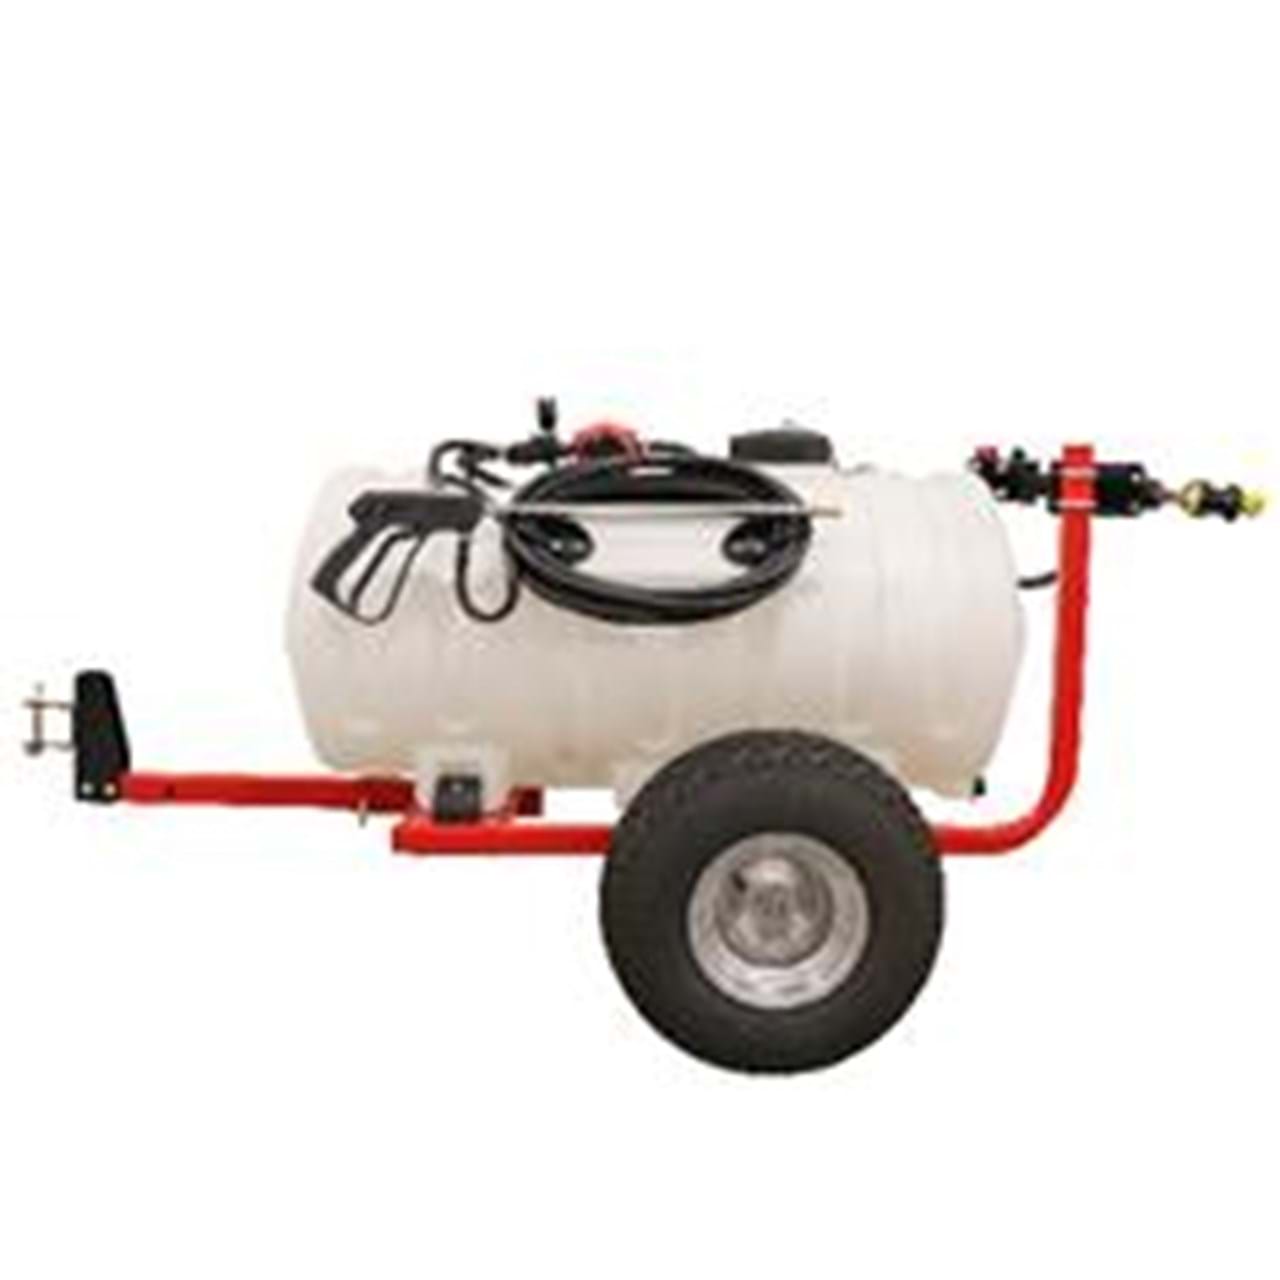 Fimco ATV Sprayer 2.4 Gpm 2 Nozzle 15 Gal 5302318 : : Patio, Lawn  & Garden